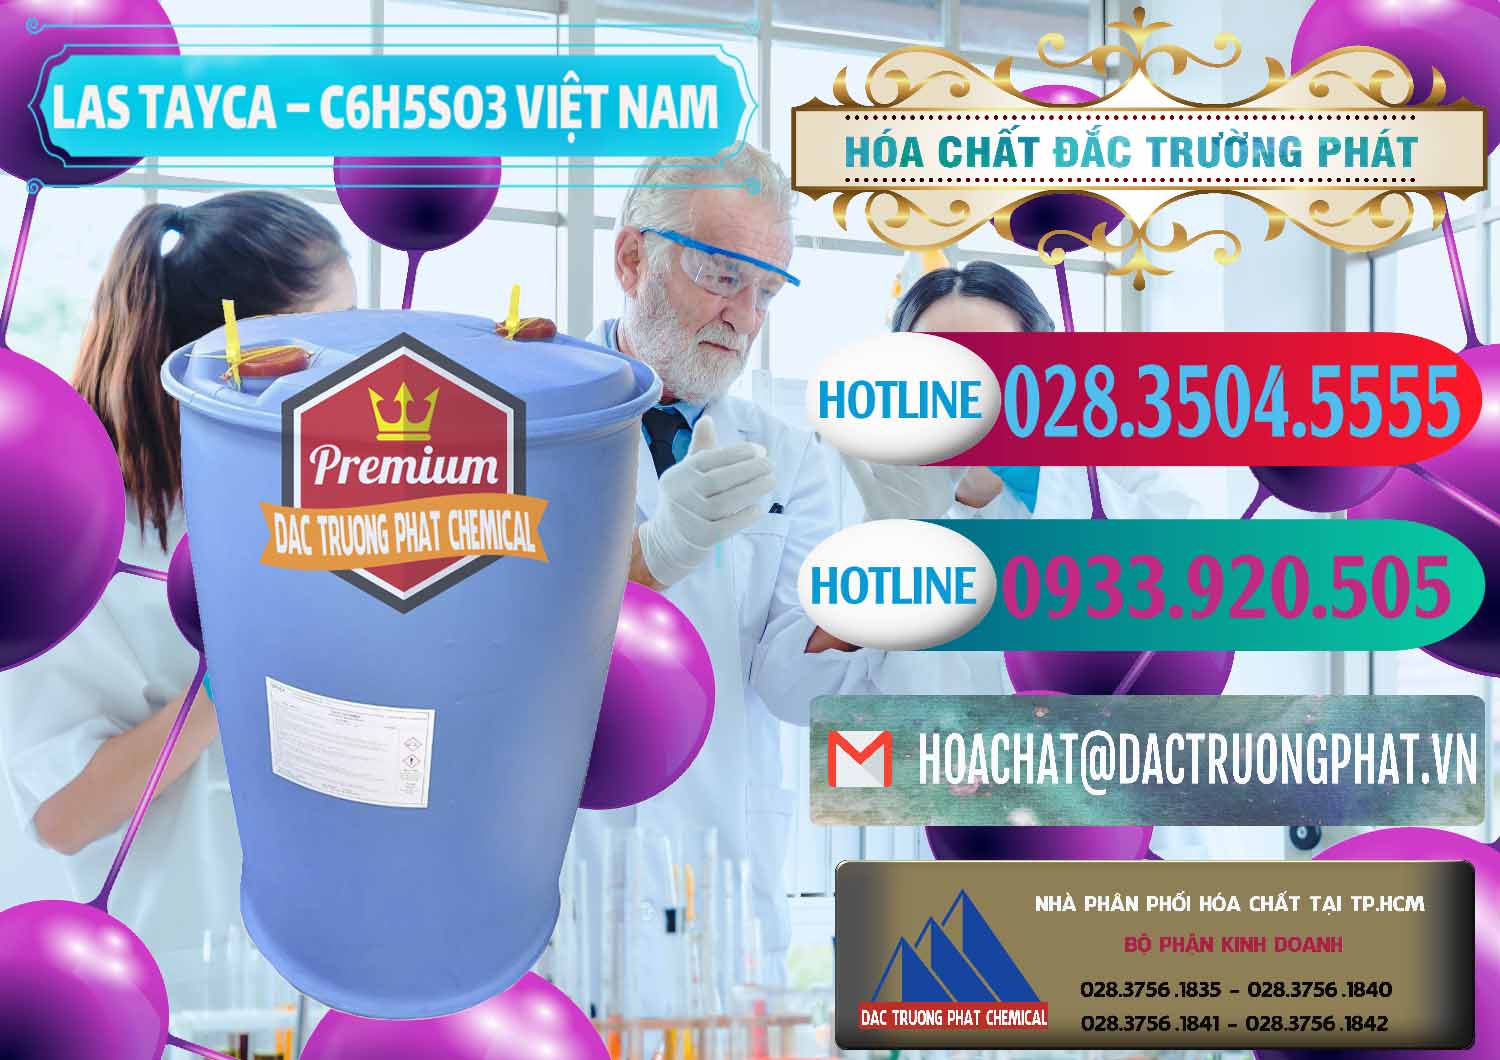 Công ty chuyên bán & phân phối Chất tạo bọt Las Tayca Việt Nam - 0305 - Cty chuyên phân phối ( kinh doanh ) hóa chất tại TP.HCM - truongphat.vn